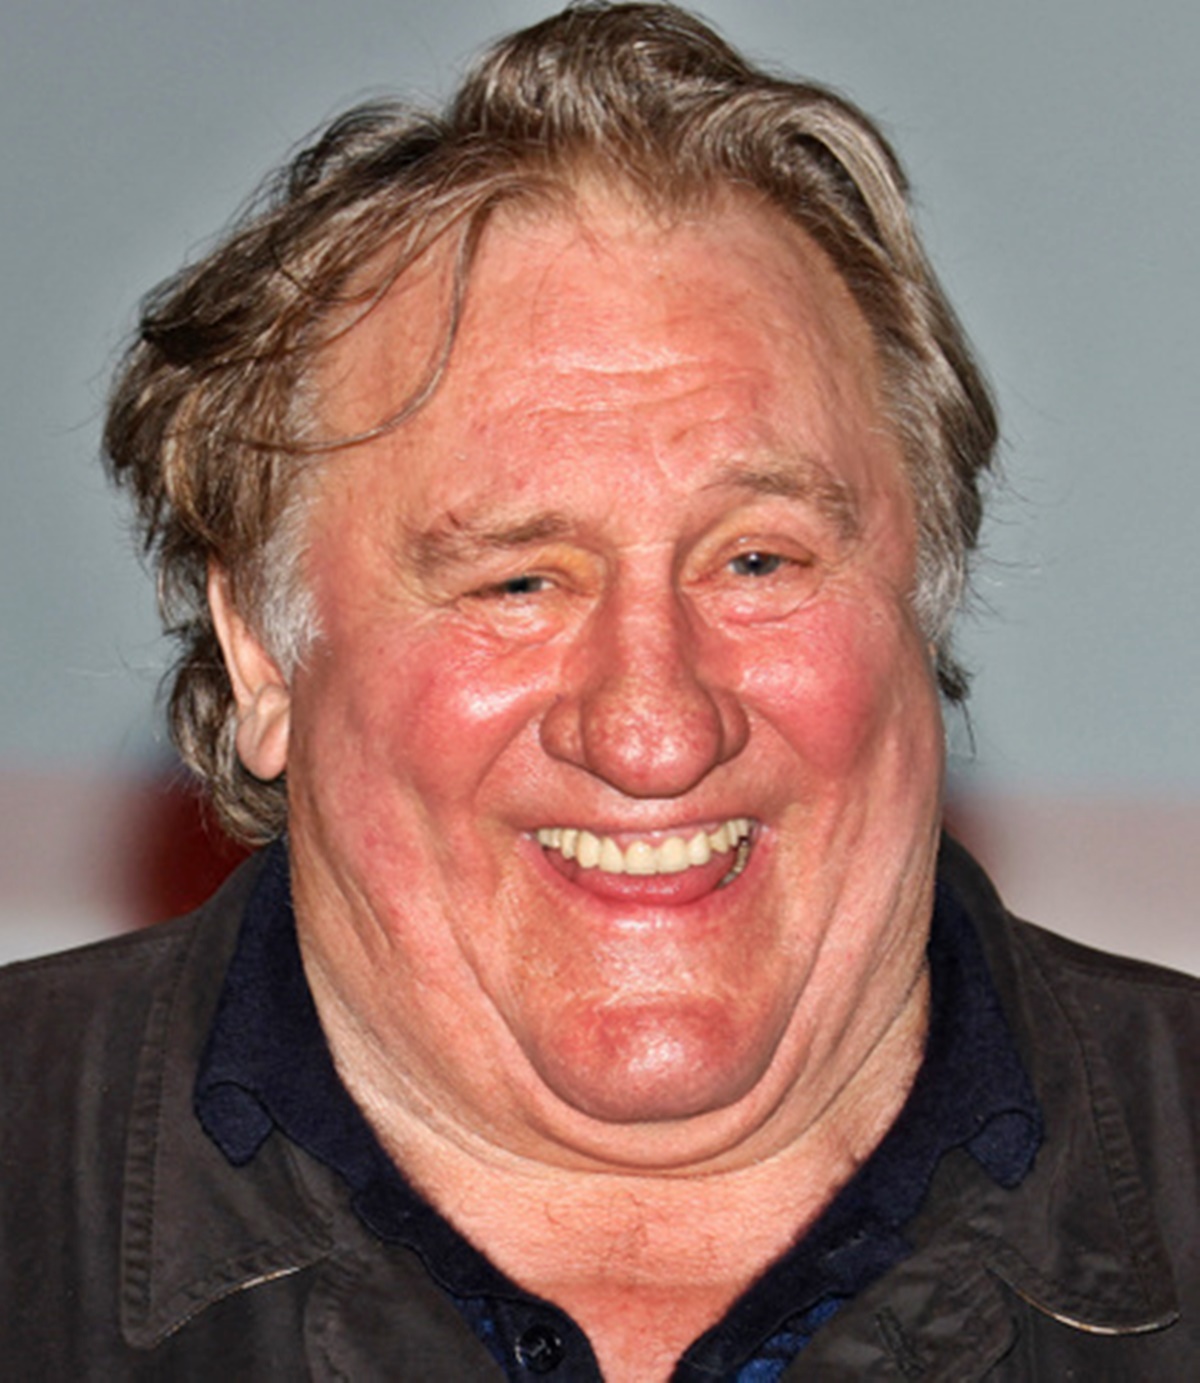 Sokkoló fotók a durván elhízott Gérard Depardieu-ről – A színész arcát fel sem lehet ismerni